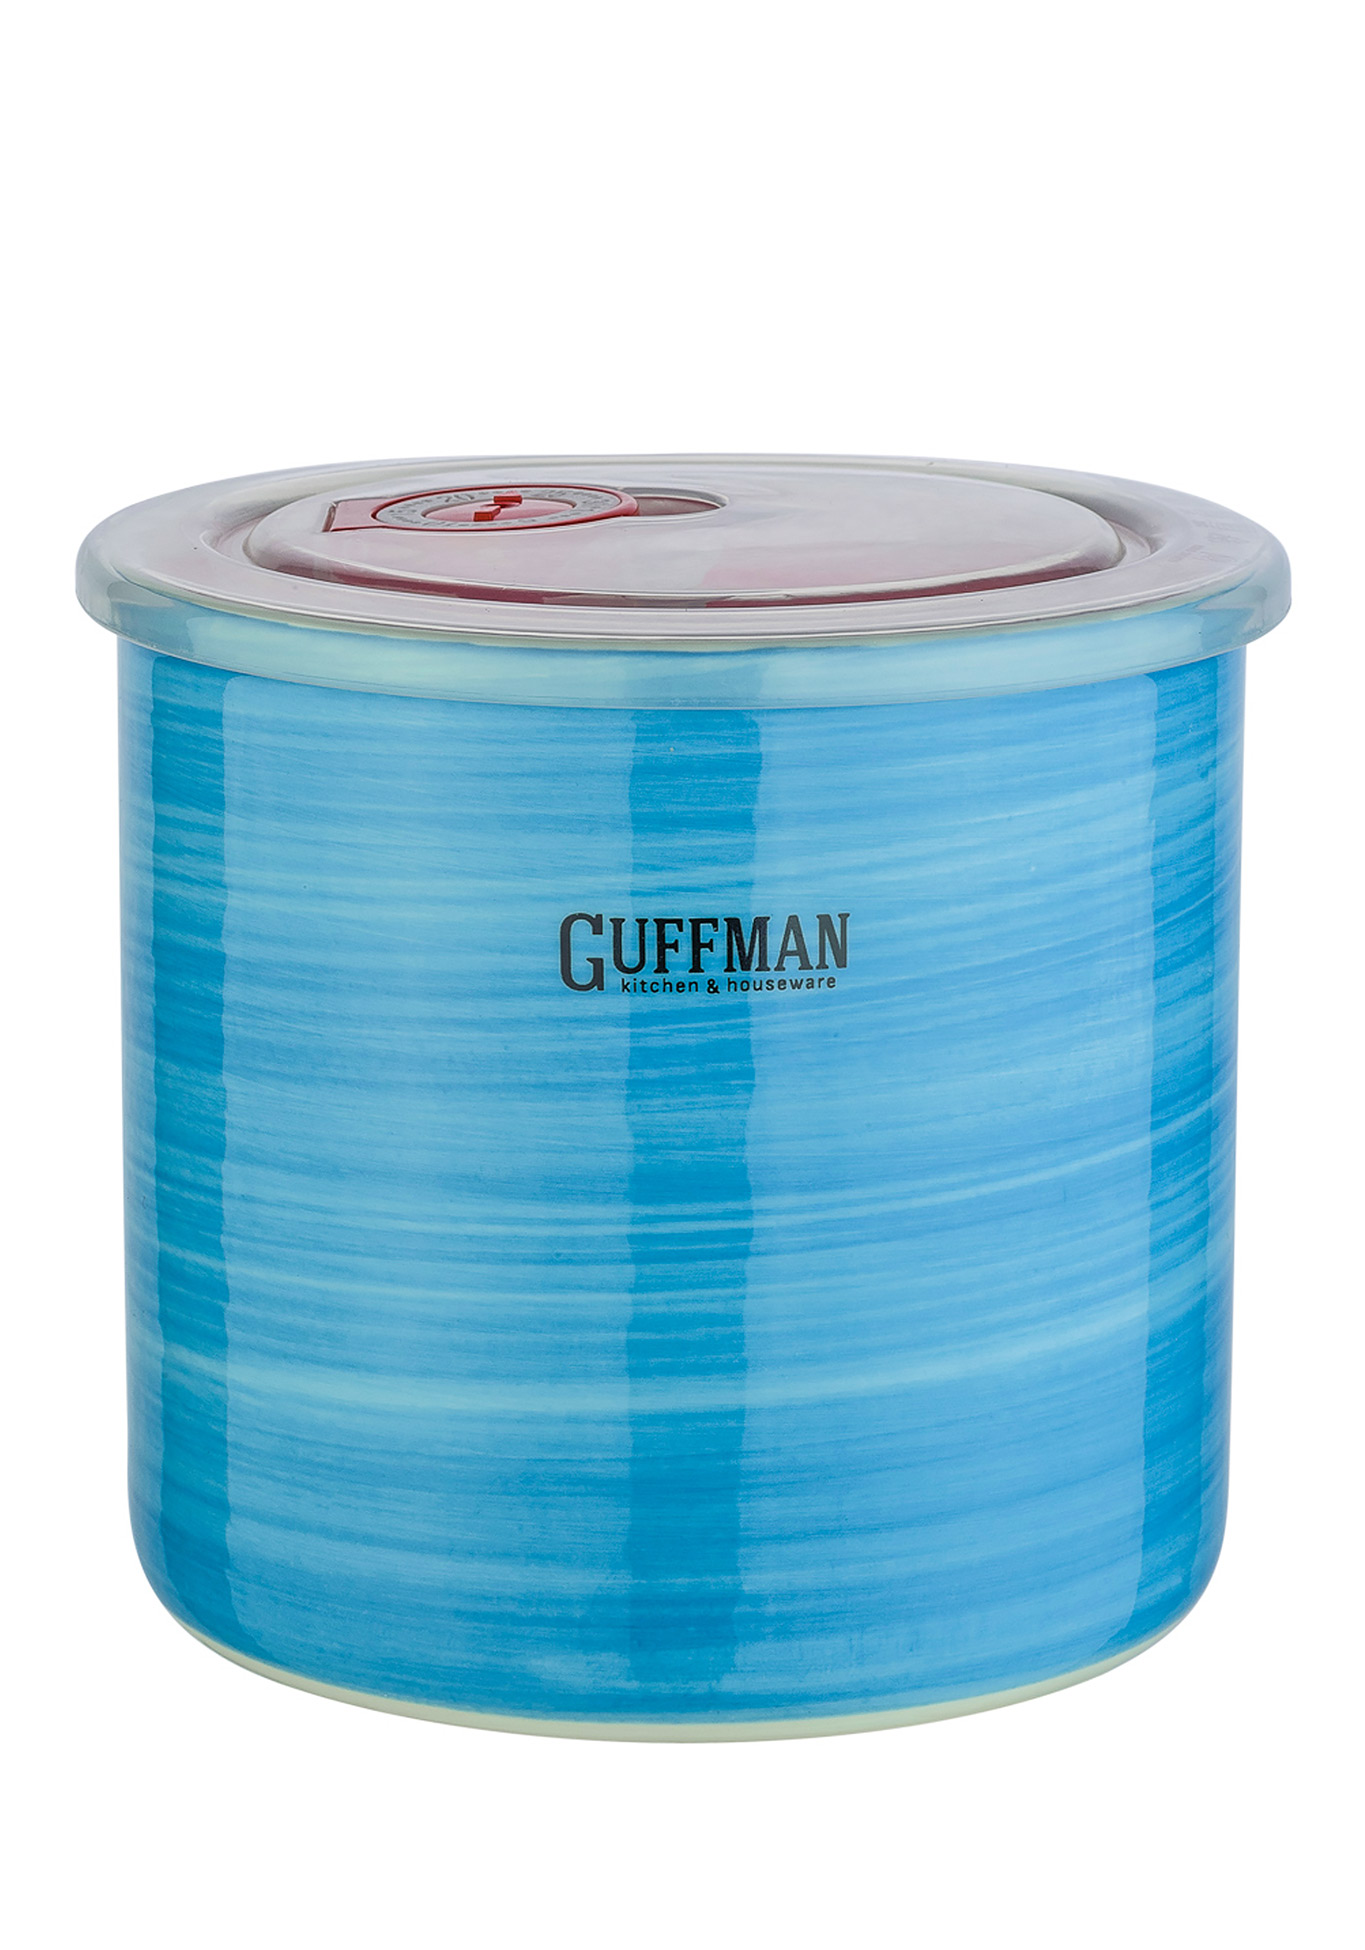 GUFFMAN Керамическая банка, голубая, 1 л GUFFMAN - фото 1